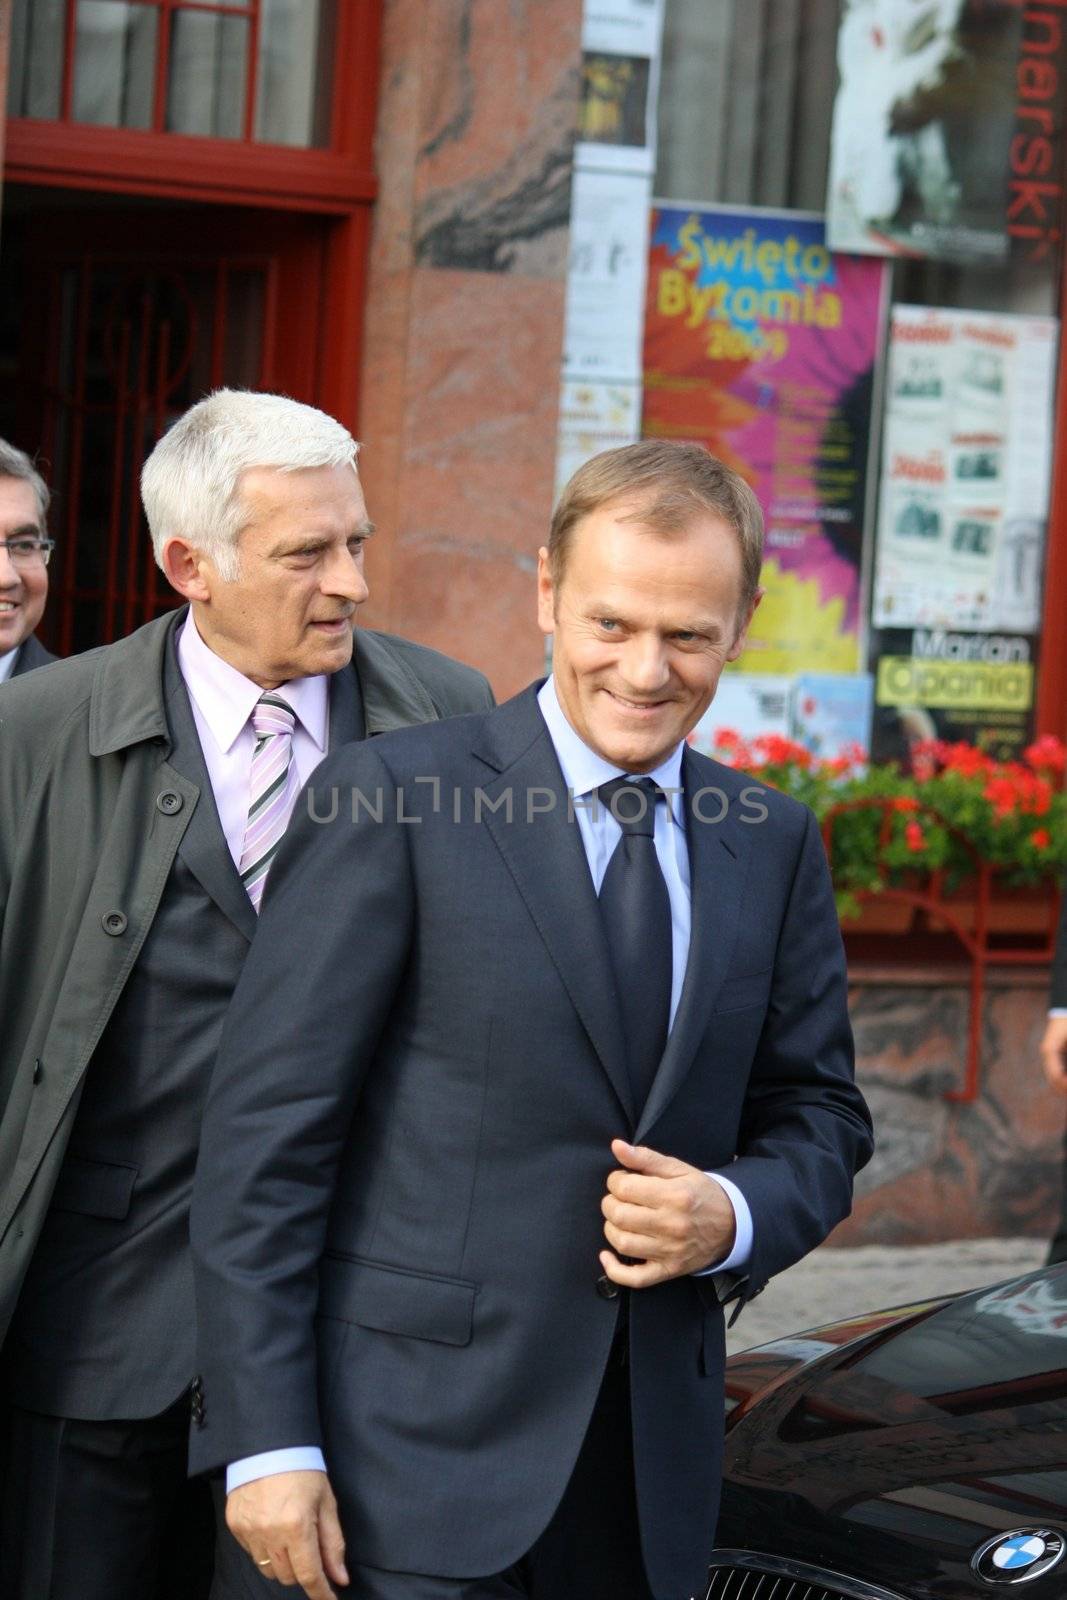 2 polish politicians - Jerzy Buzek and Donald Tusk by toled